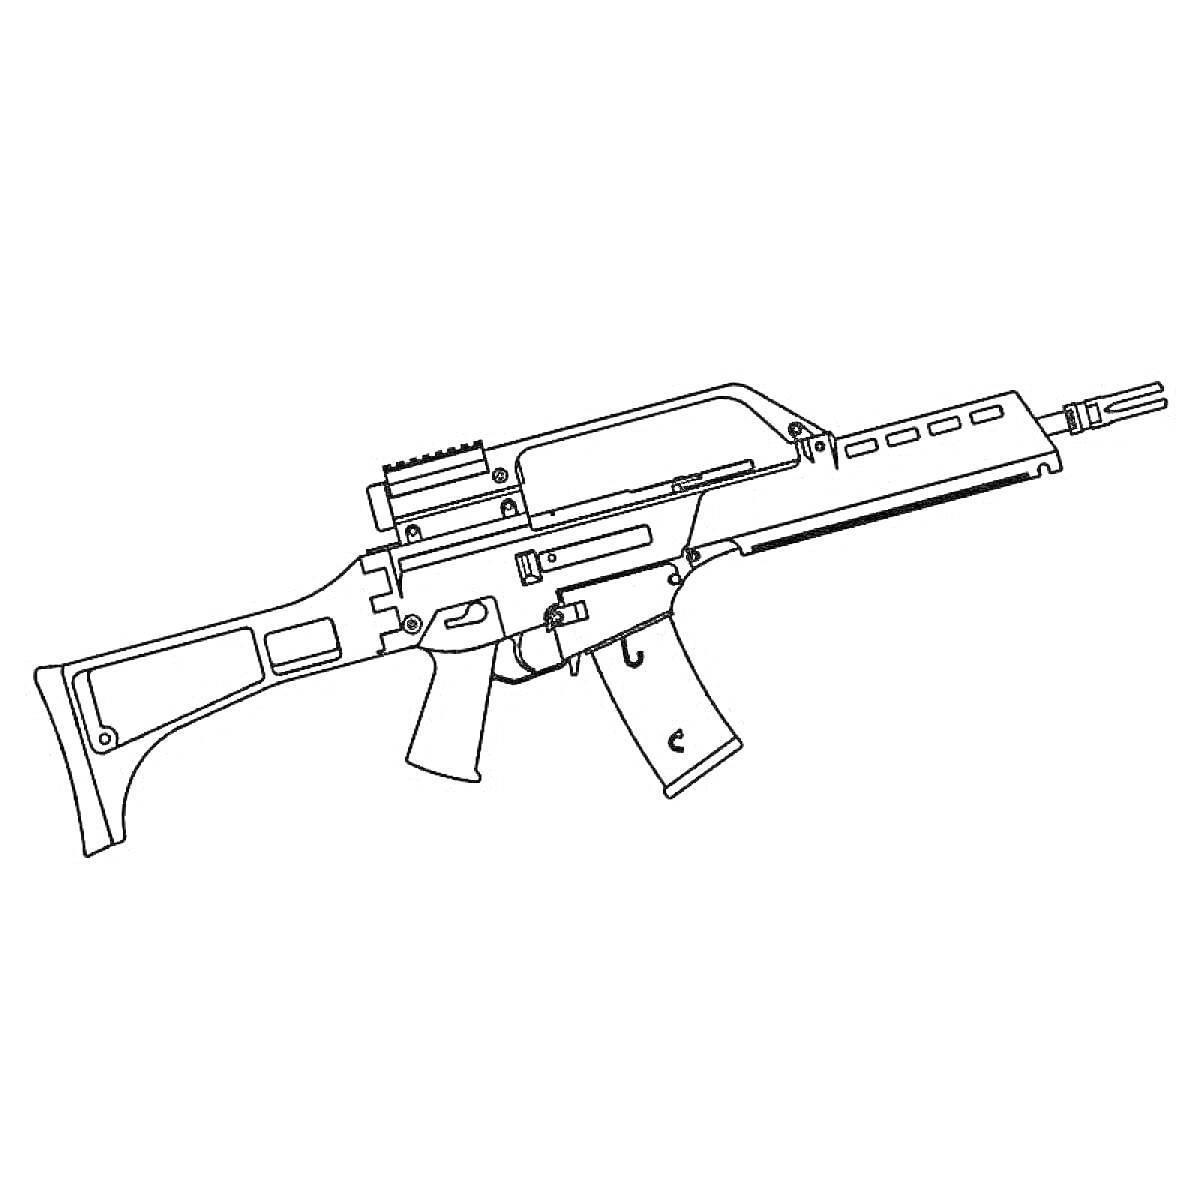 Раскраска автоматическая винтовка с магазином, прикладом, рукояткой и прицелом